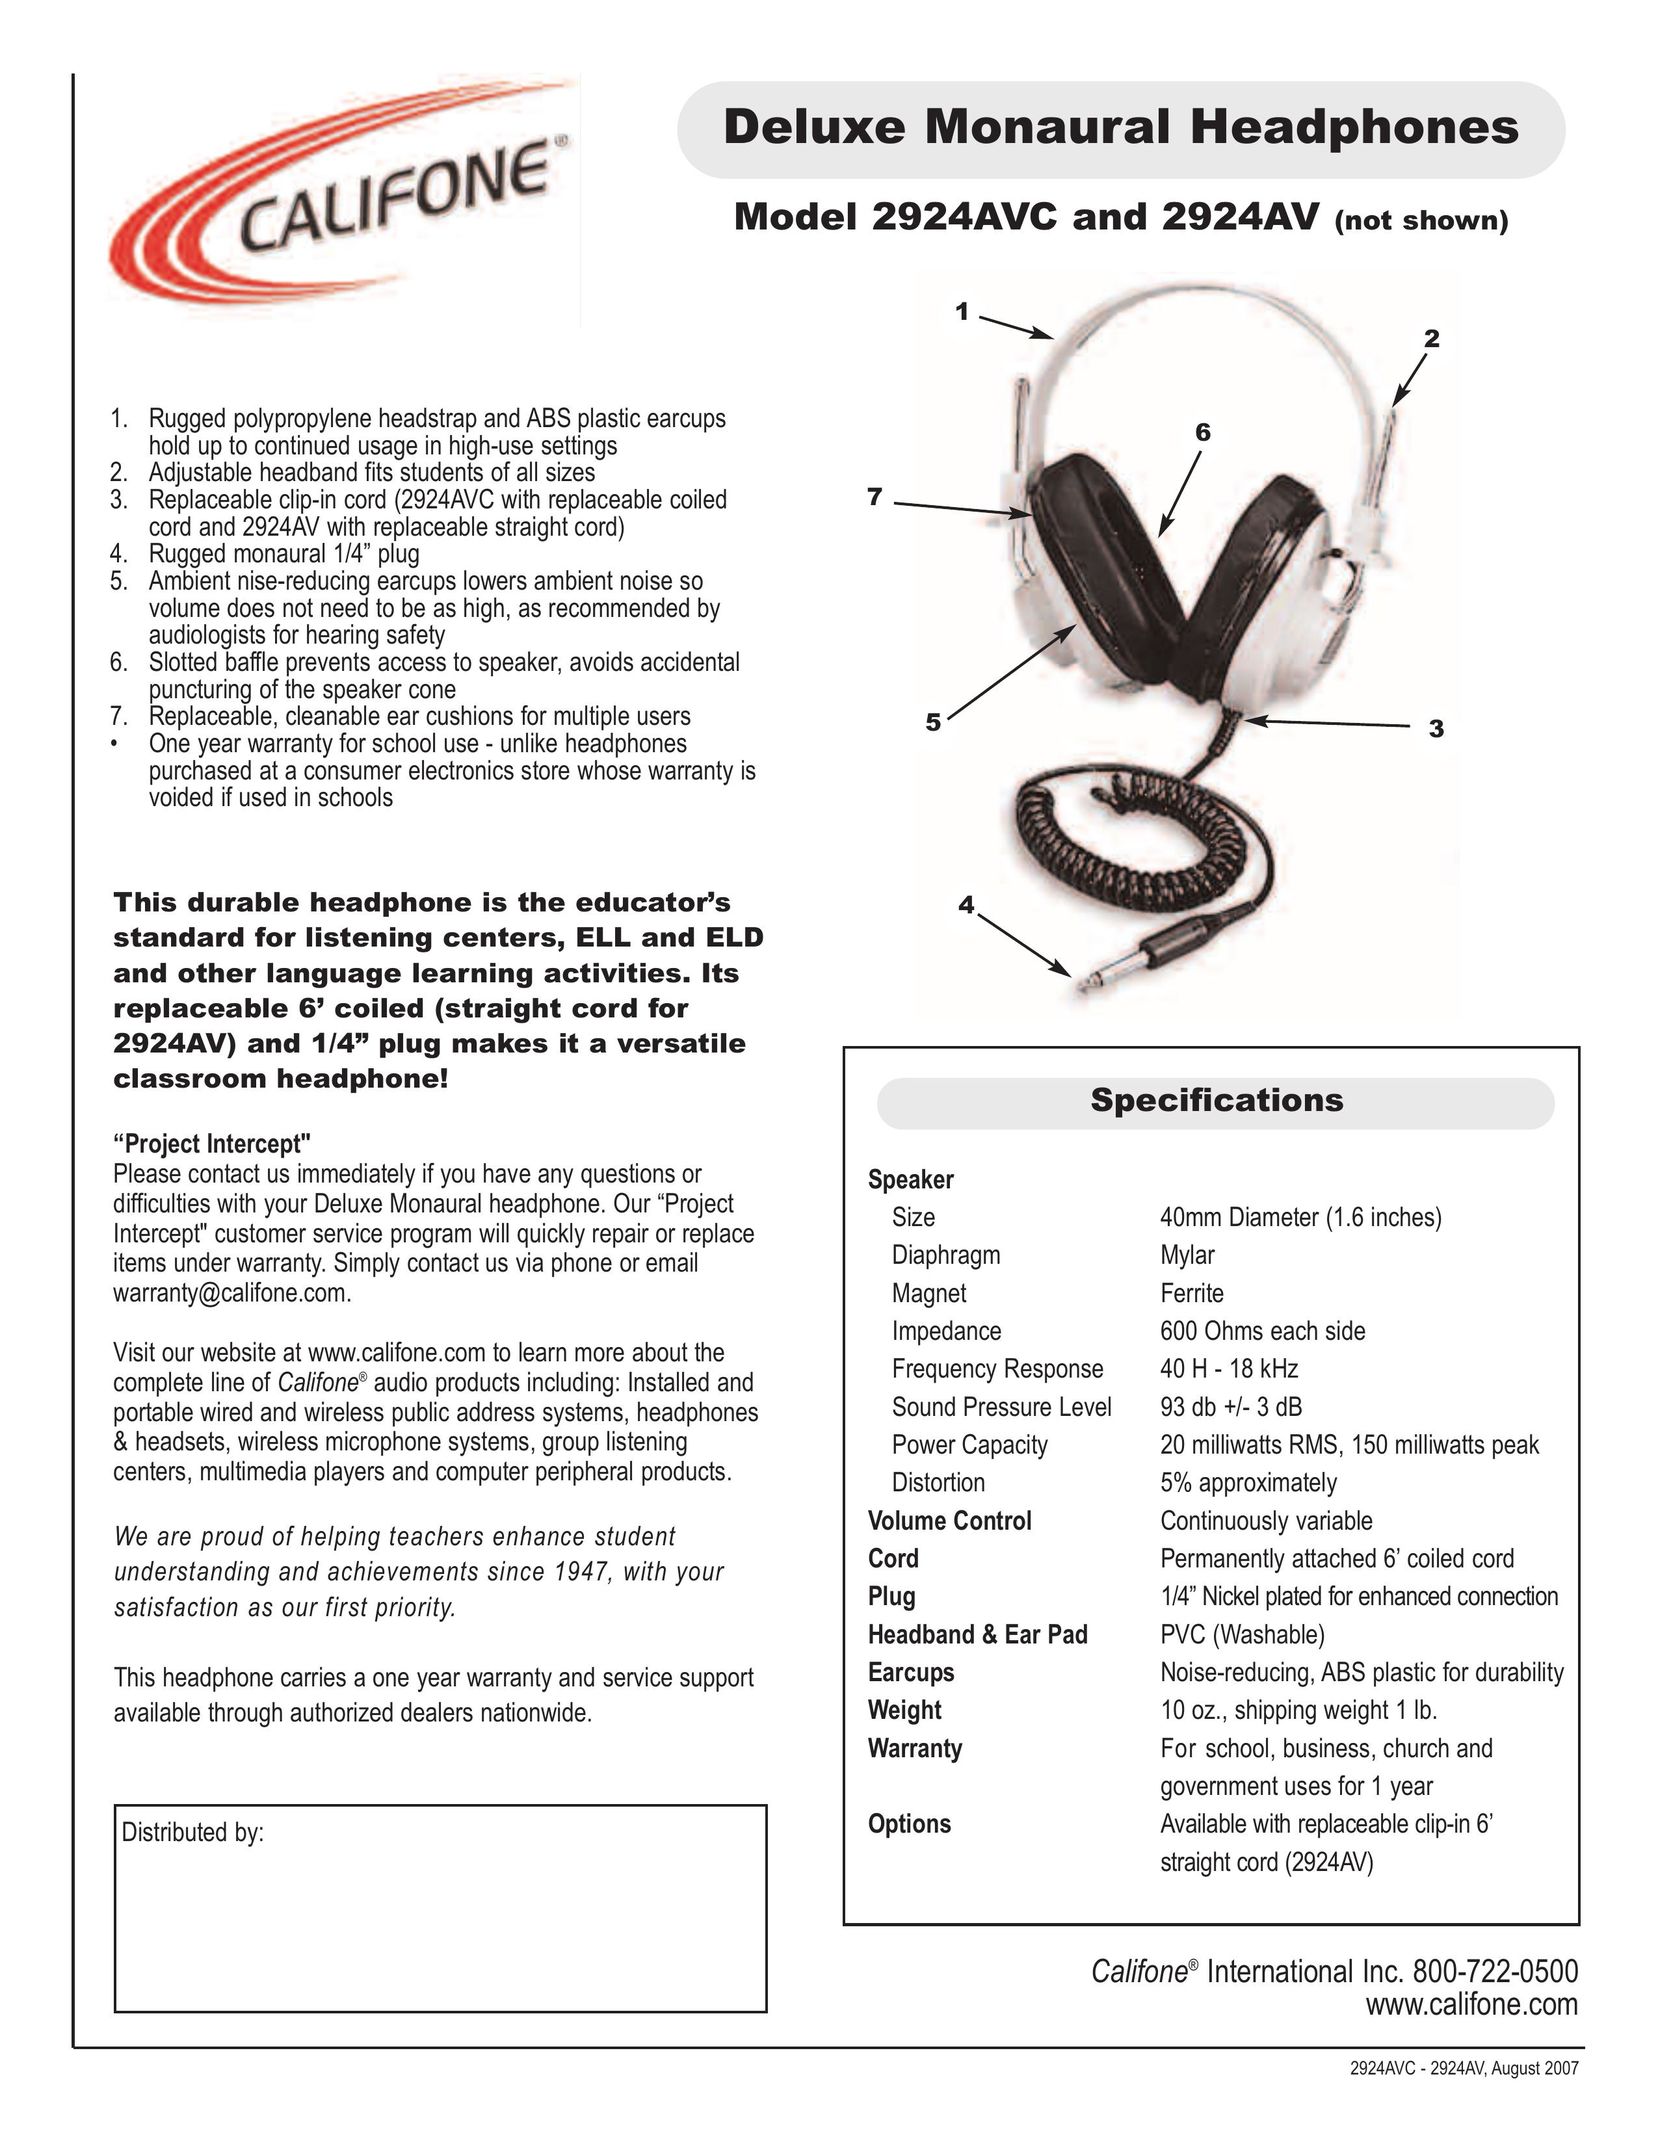 Califone 2924AV Headphones User Manual